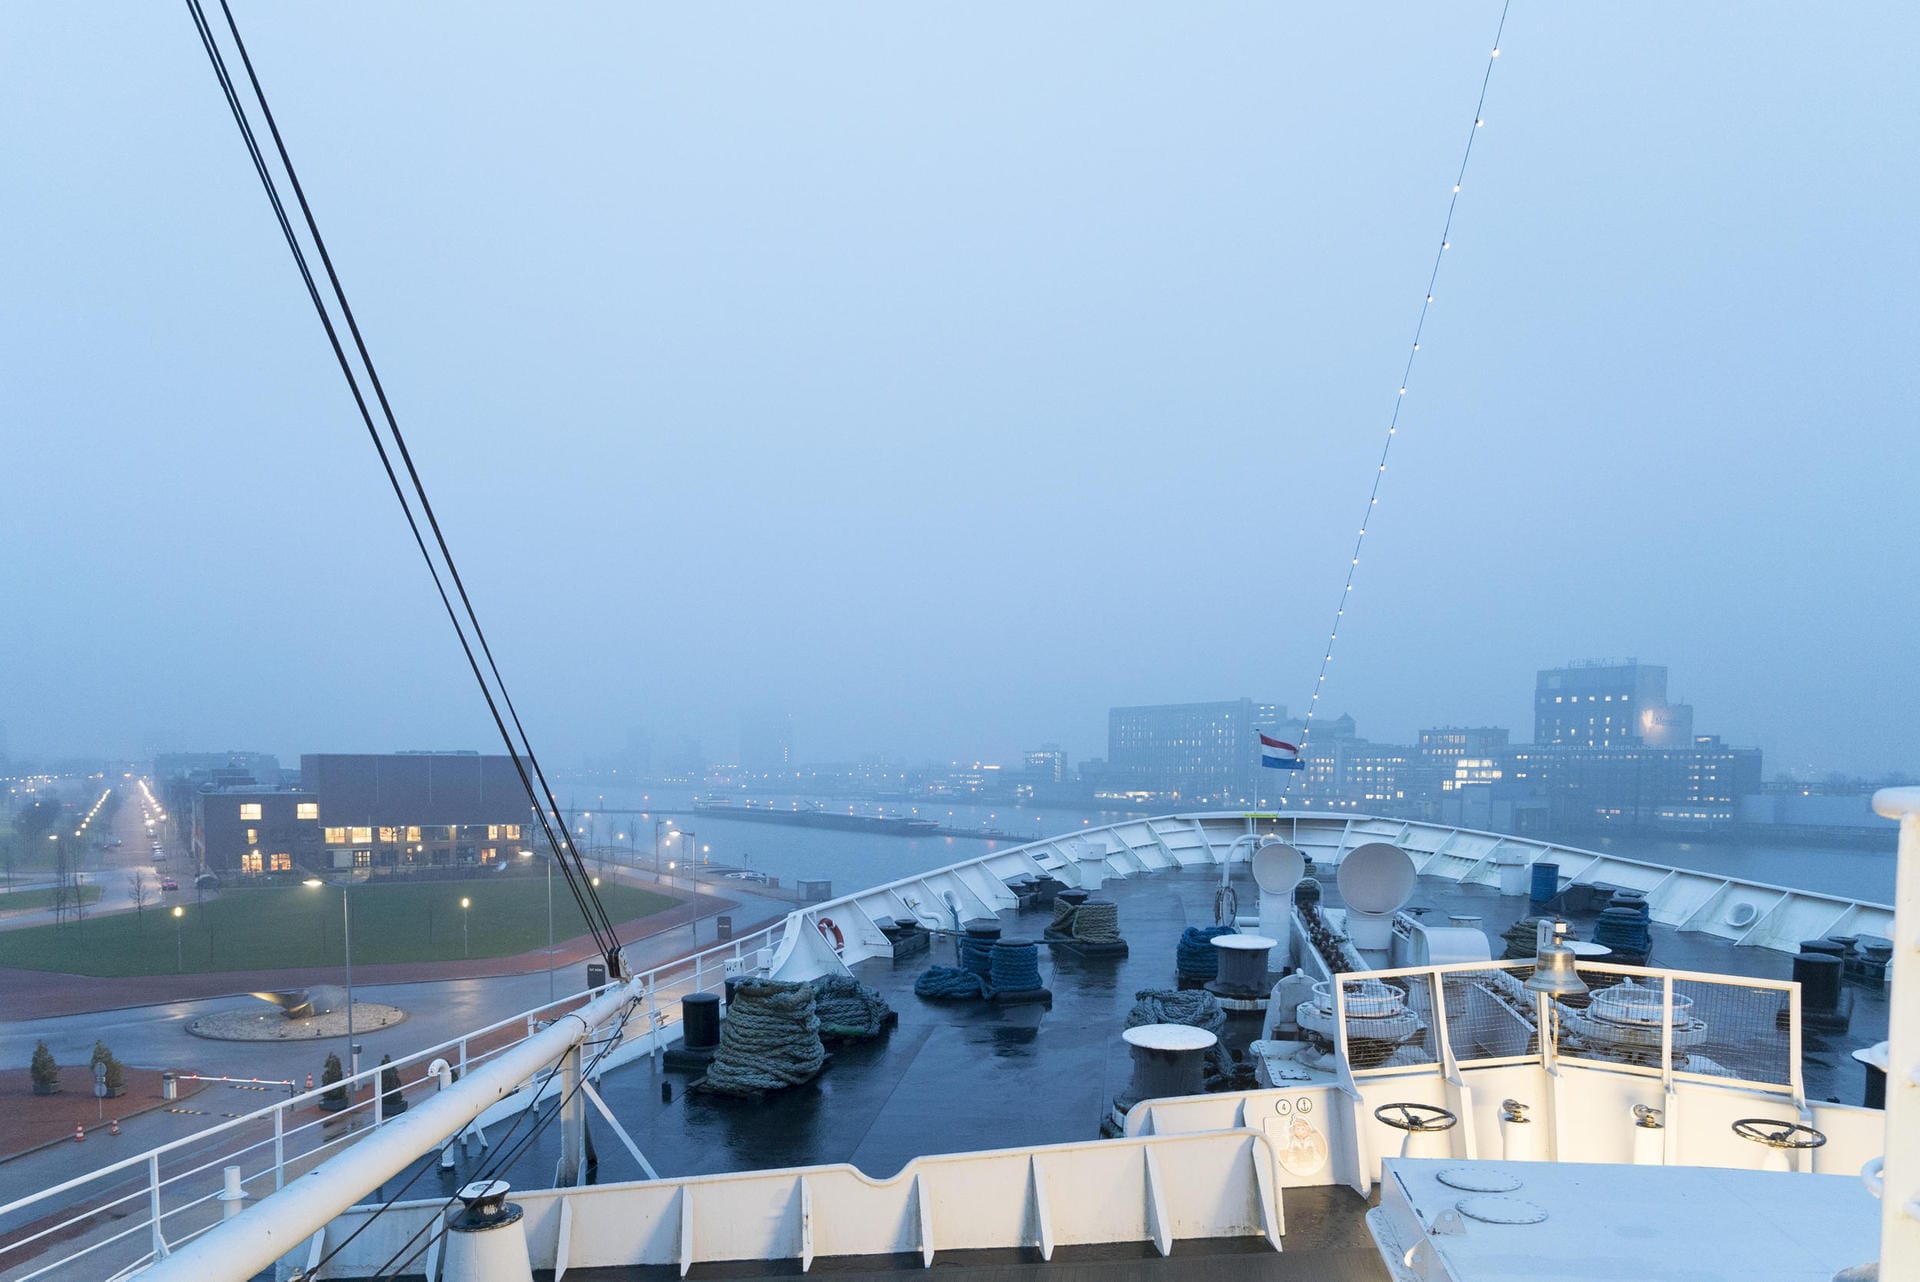 Die SS Rotterdam liegt heute als Museumsschiff an einem Kai im ehemaligen Maashaven.